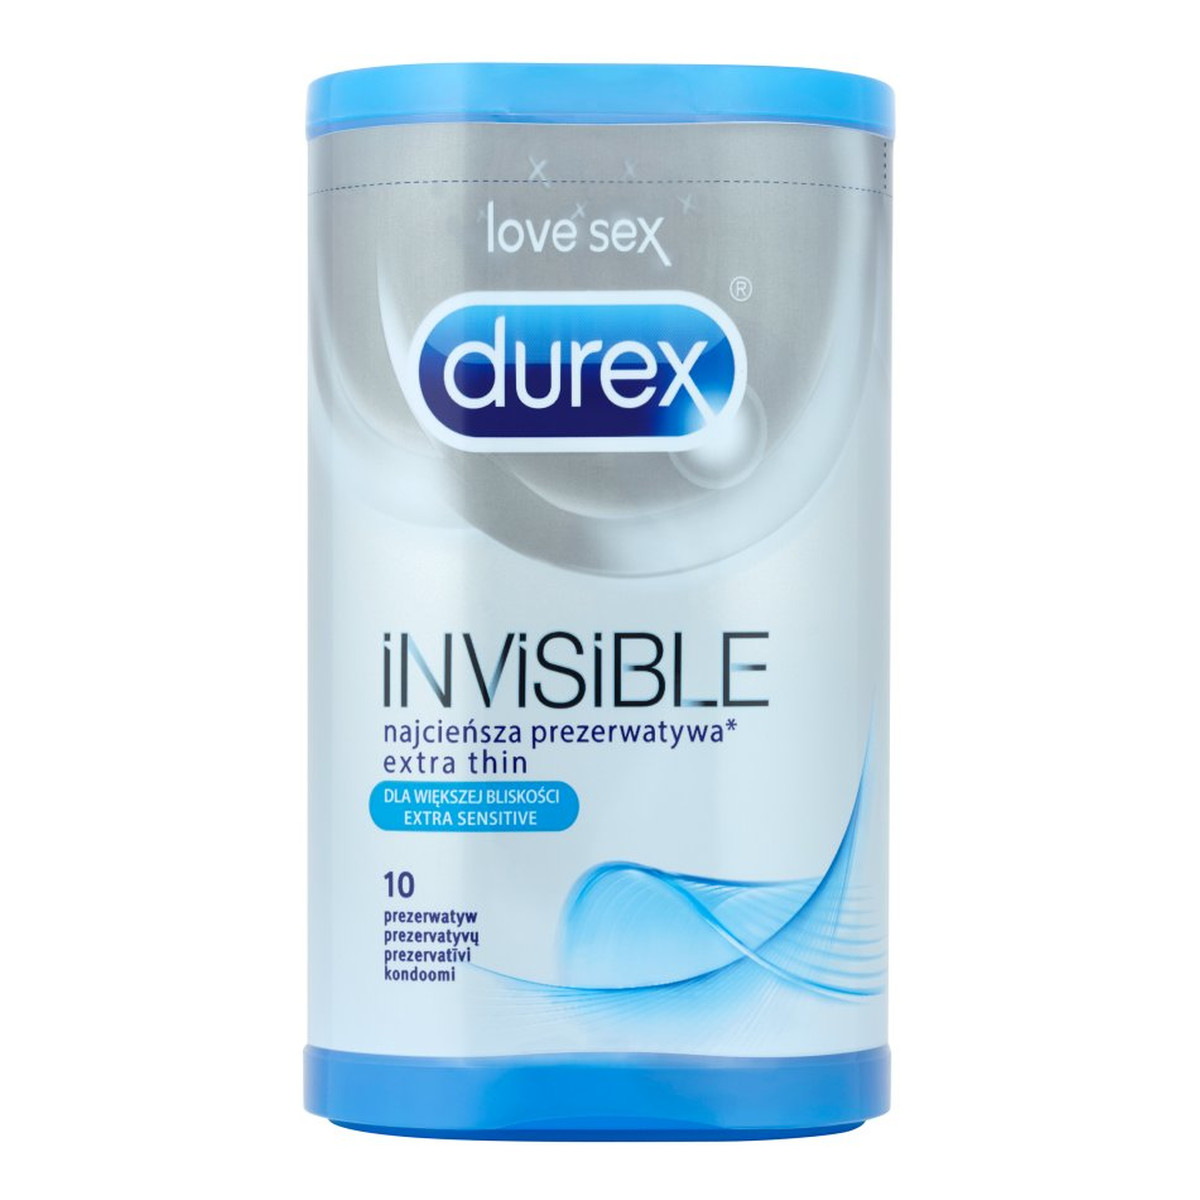 Durex Invisible Extra Sensitive Prezerwatywy 10 szt.